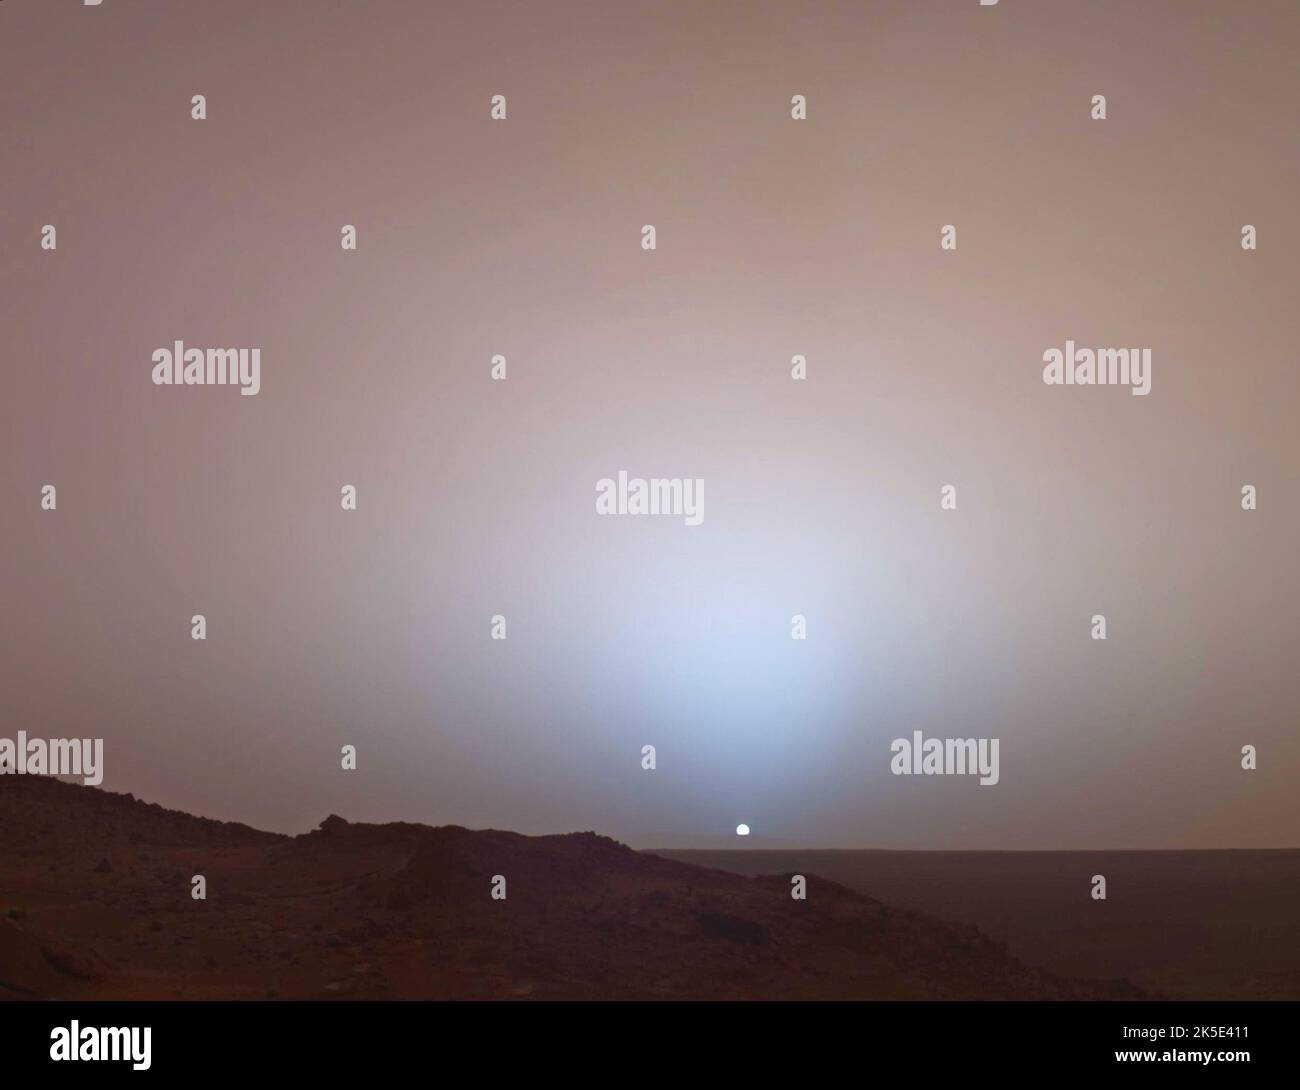 Il 19th maggio 2005, Mars Exploration Rover Spirit della NASA catturò questa vista mozzafiato mentre il Sole affondava sotto il bordo del cratere di Gusev su Marte. Questo mosaico della telecamera panoramica è stato preso intorno alle 6:07:00 nella sera del giorno marziano 489th di rover, o sol. Altre immagini hanno mostrato che il crepuscolo rimane visibile, ma sempre più debole, fino a due ore prima dell'alba o dopo il tramonto. Il lungo crepuscolo marziano (rispetto a quello terrestre) è causato dalla luce solare diffusa intorno al lato notturno del pianeta da abbondante polvere ad alta quota. Una versione ottimizzata delle immagini NASA. Credito NASA/JPL Foto Stock